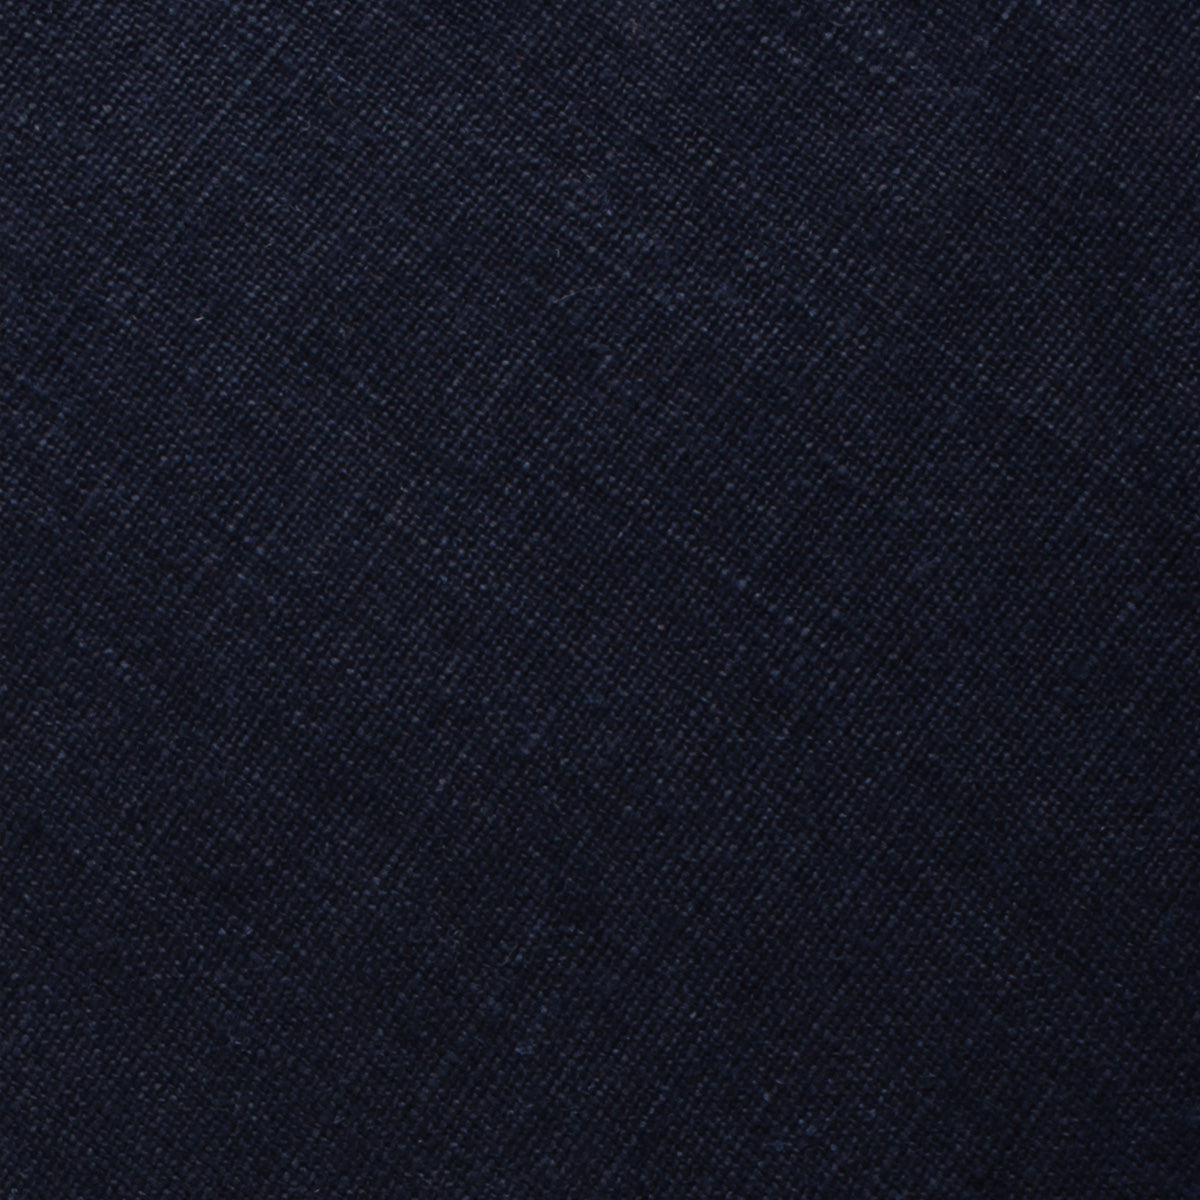 Dark Midnight Blue Linen Pocket Square Fabric